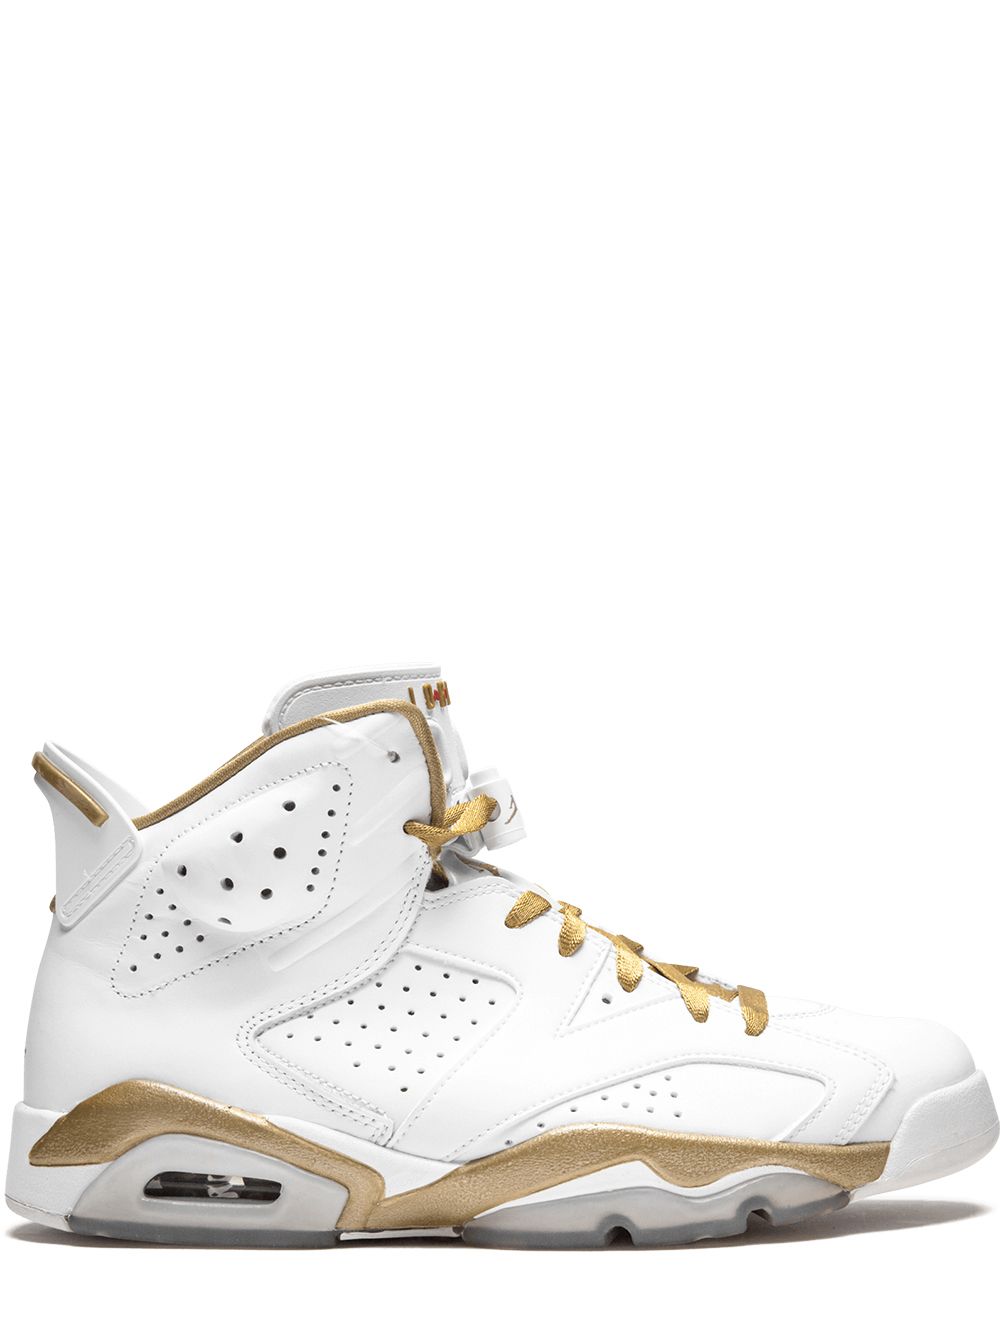 Jordan Air Jordan Golden Moment Pack sneakers - White